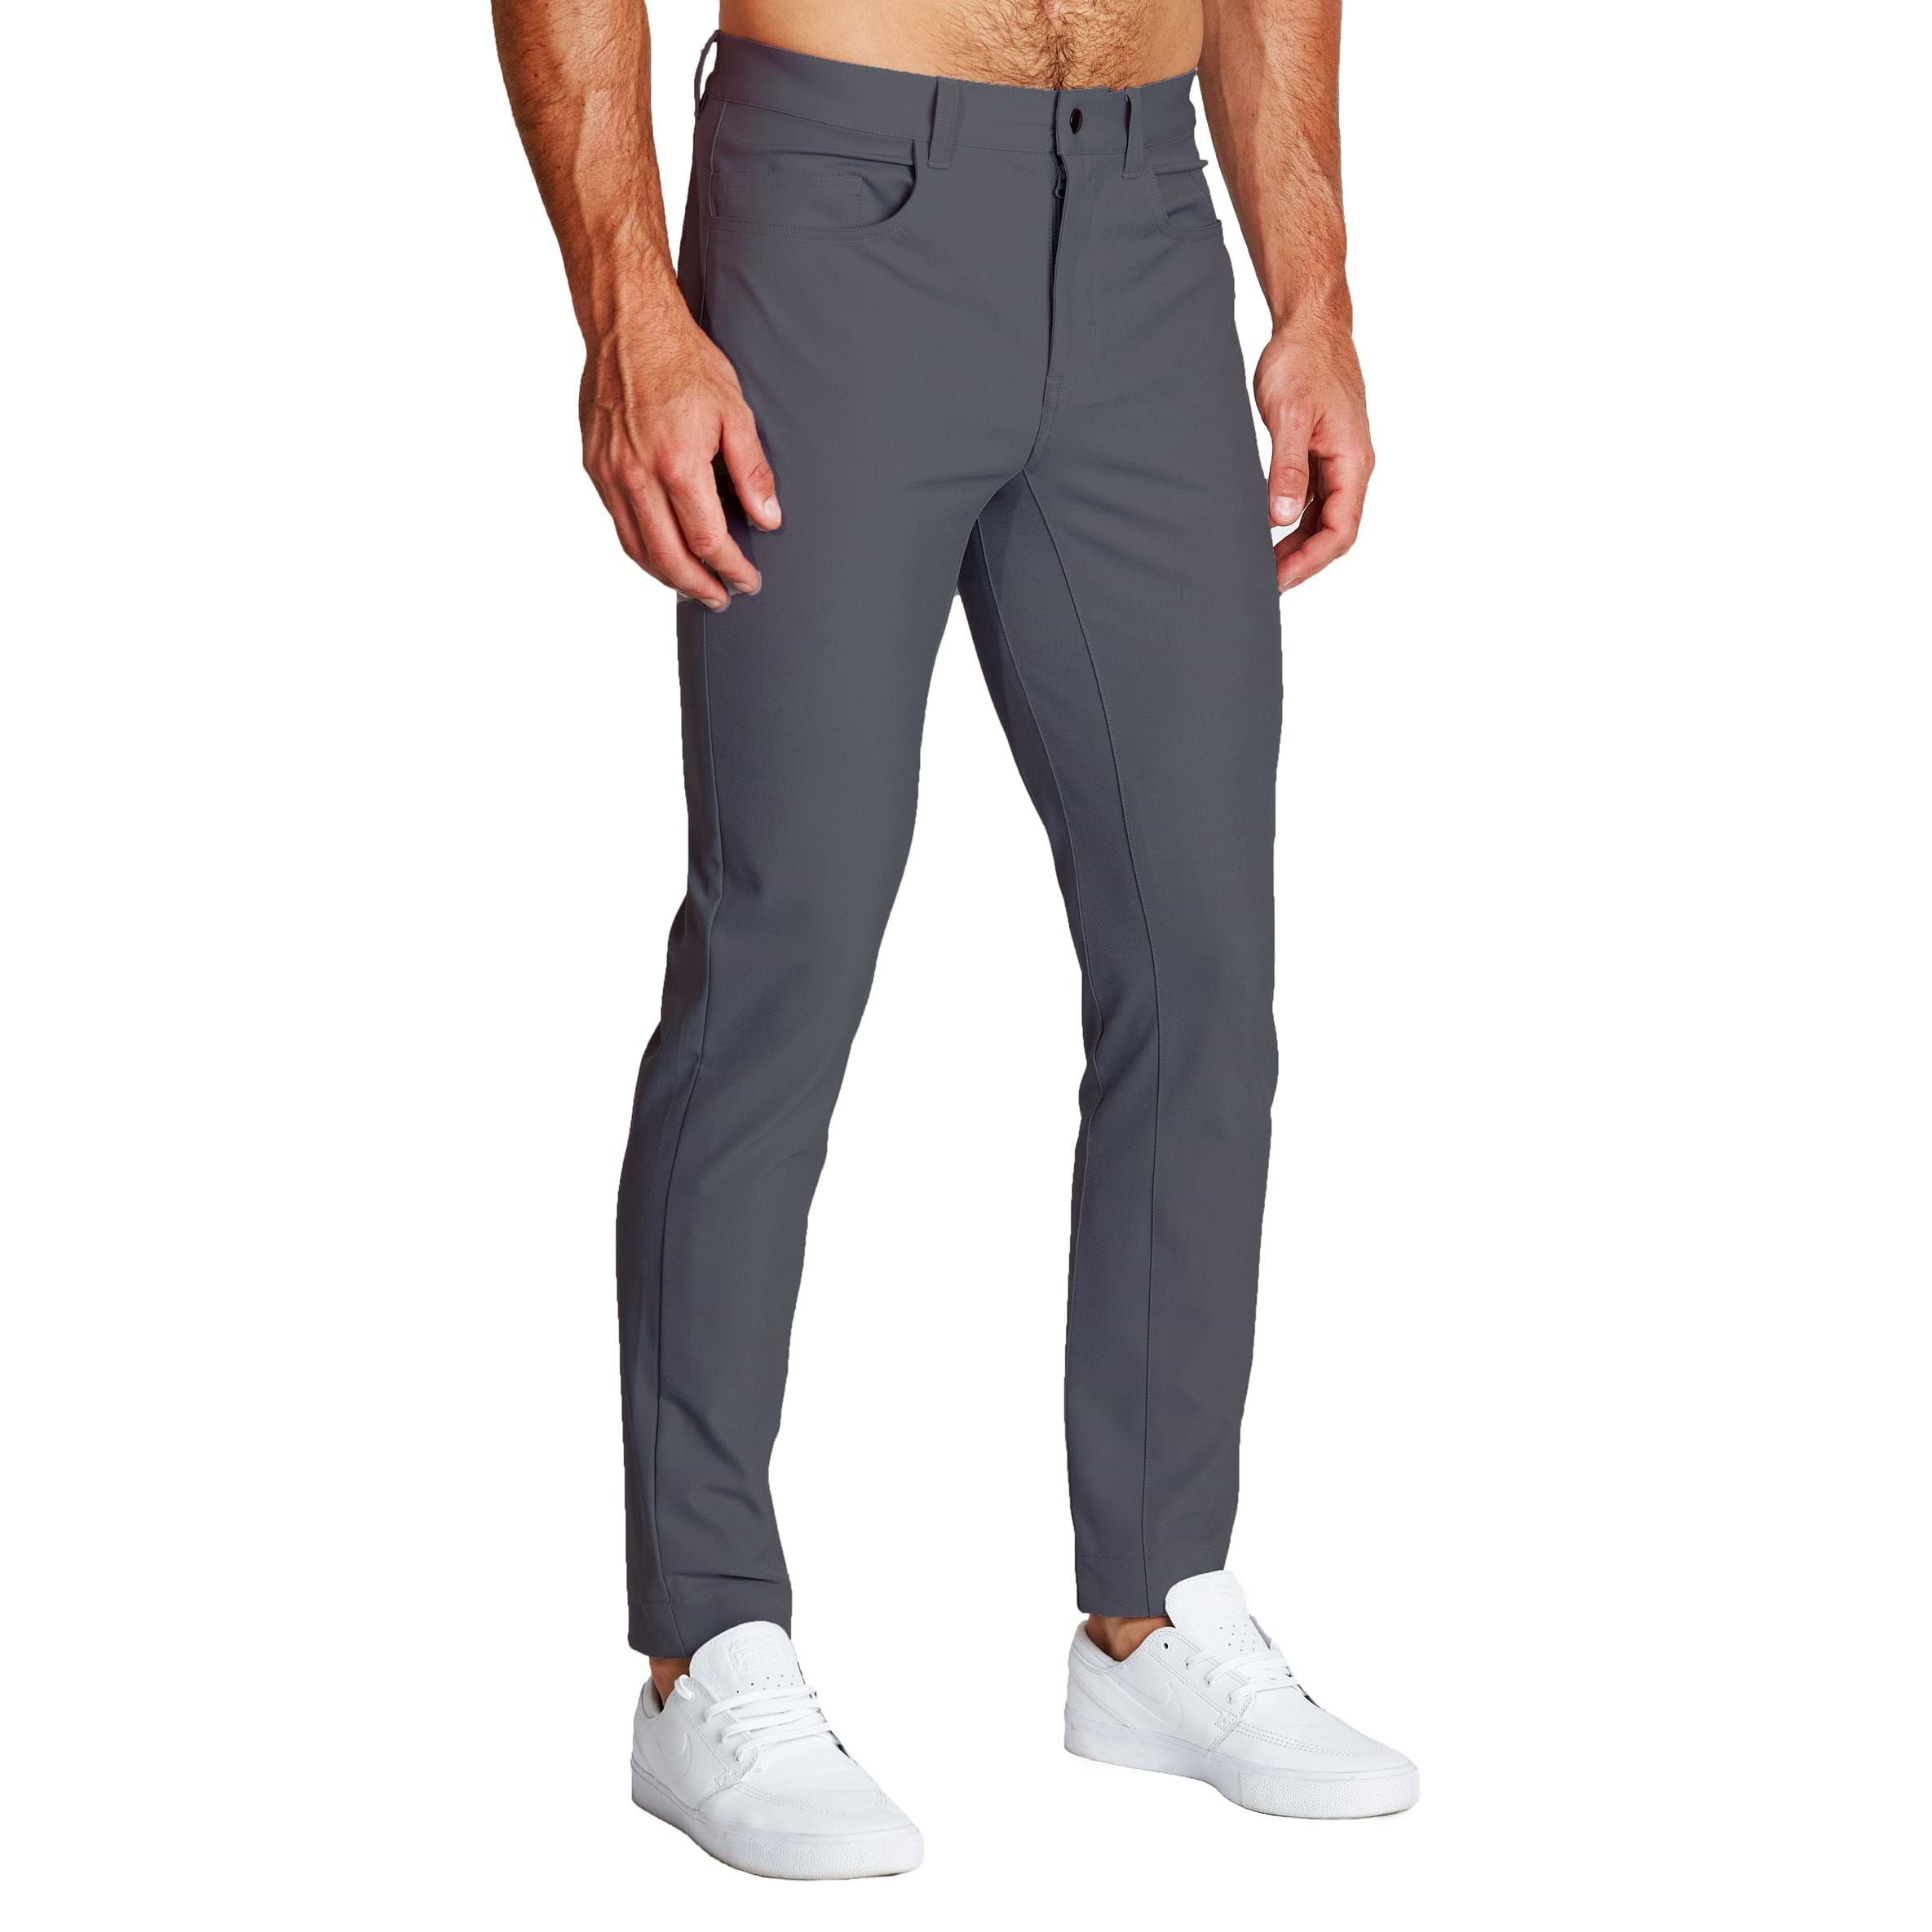 lululemon athletica Media Pocket Sweat Pants for Men